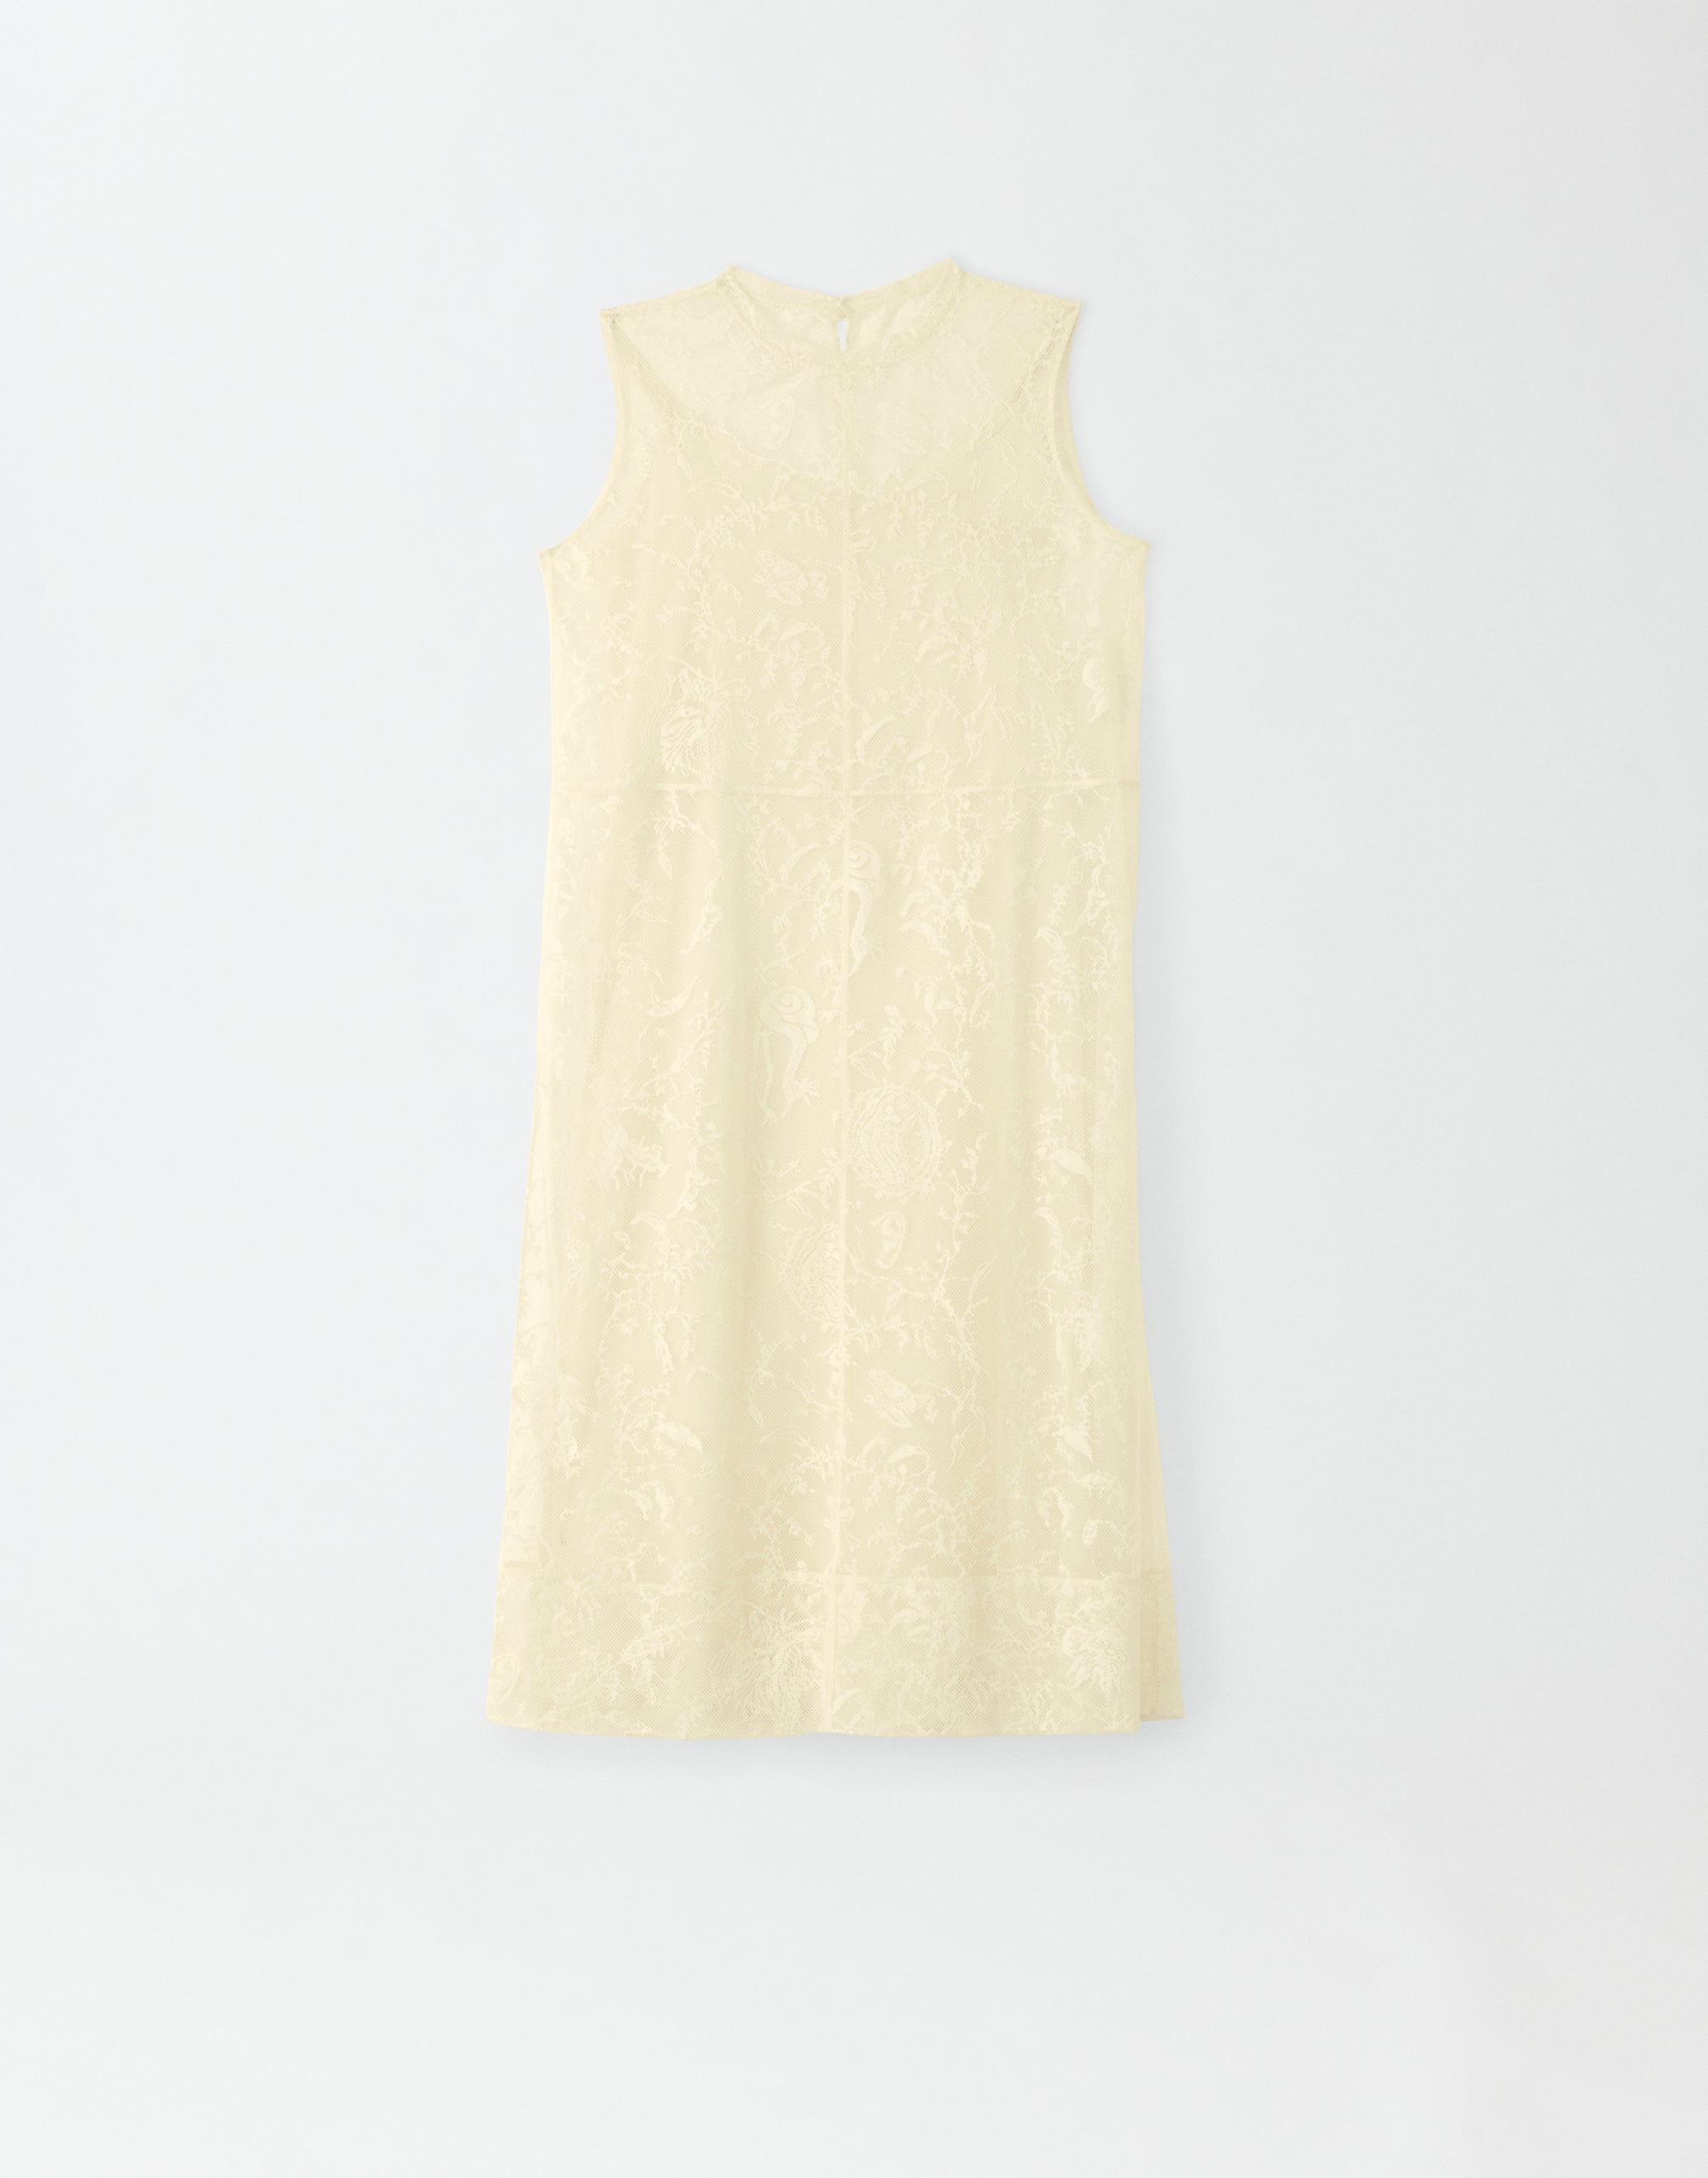 Jacquard lace dress, yellow